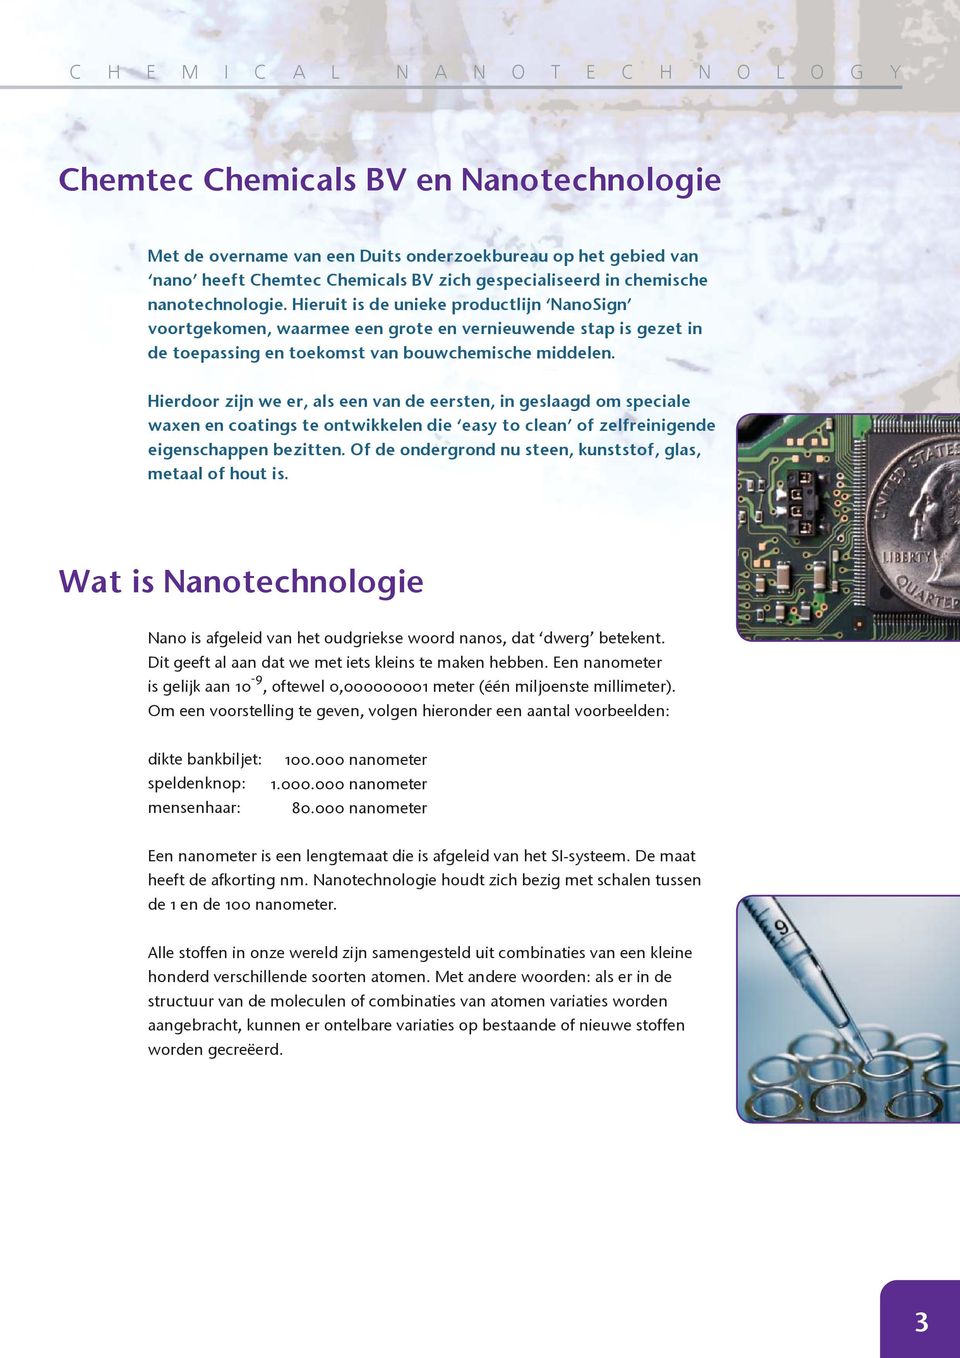 Hieruit is de unieke productlijn NanoSign voortgekomen, waarmee een grote en vernieuwende stap is gezet in de toepassing en toekomst van bouwchemische middelen.